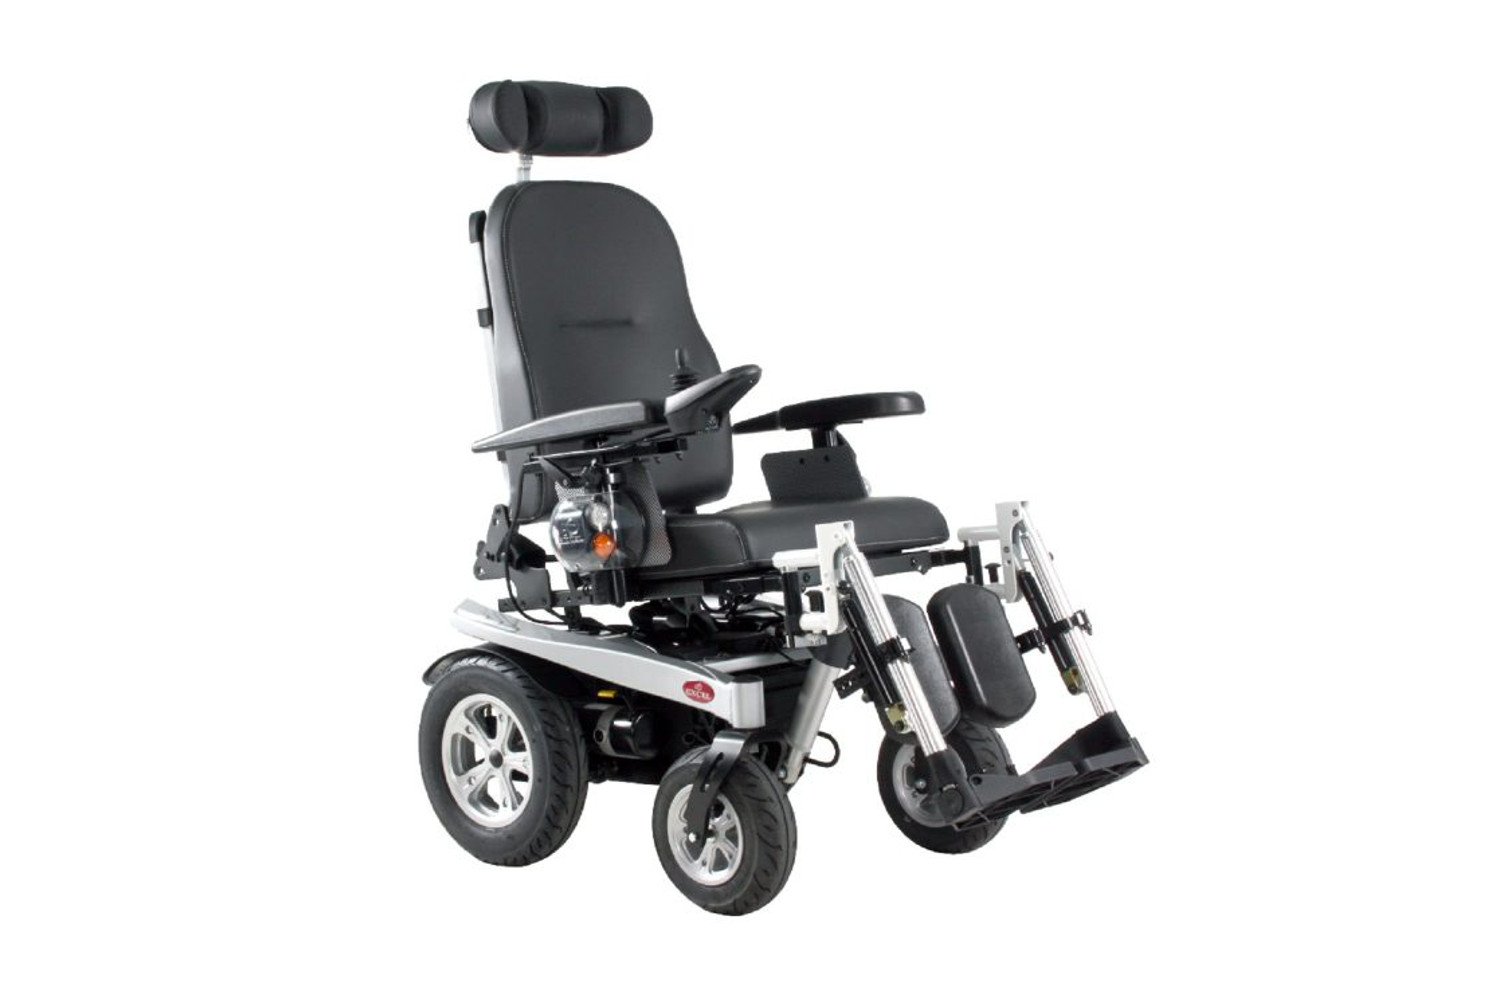 Elektrický invalidní vozík Excel Airide X-Tend